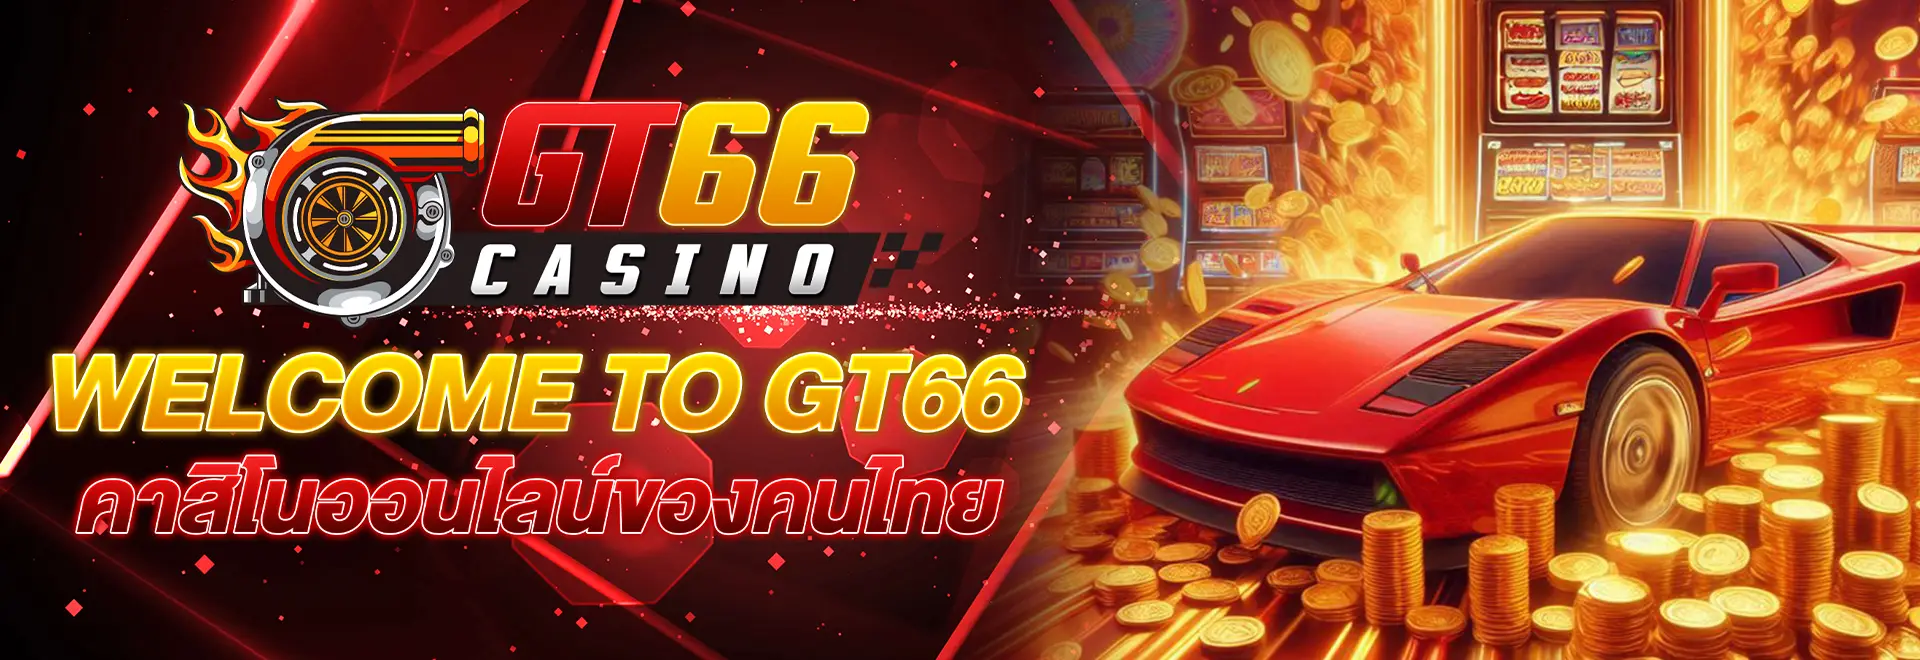 GT66 คาสิโนออนไลน์ของคนไทย